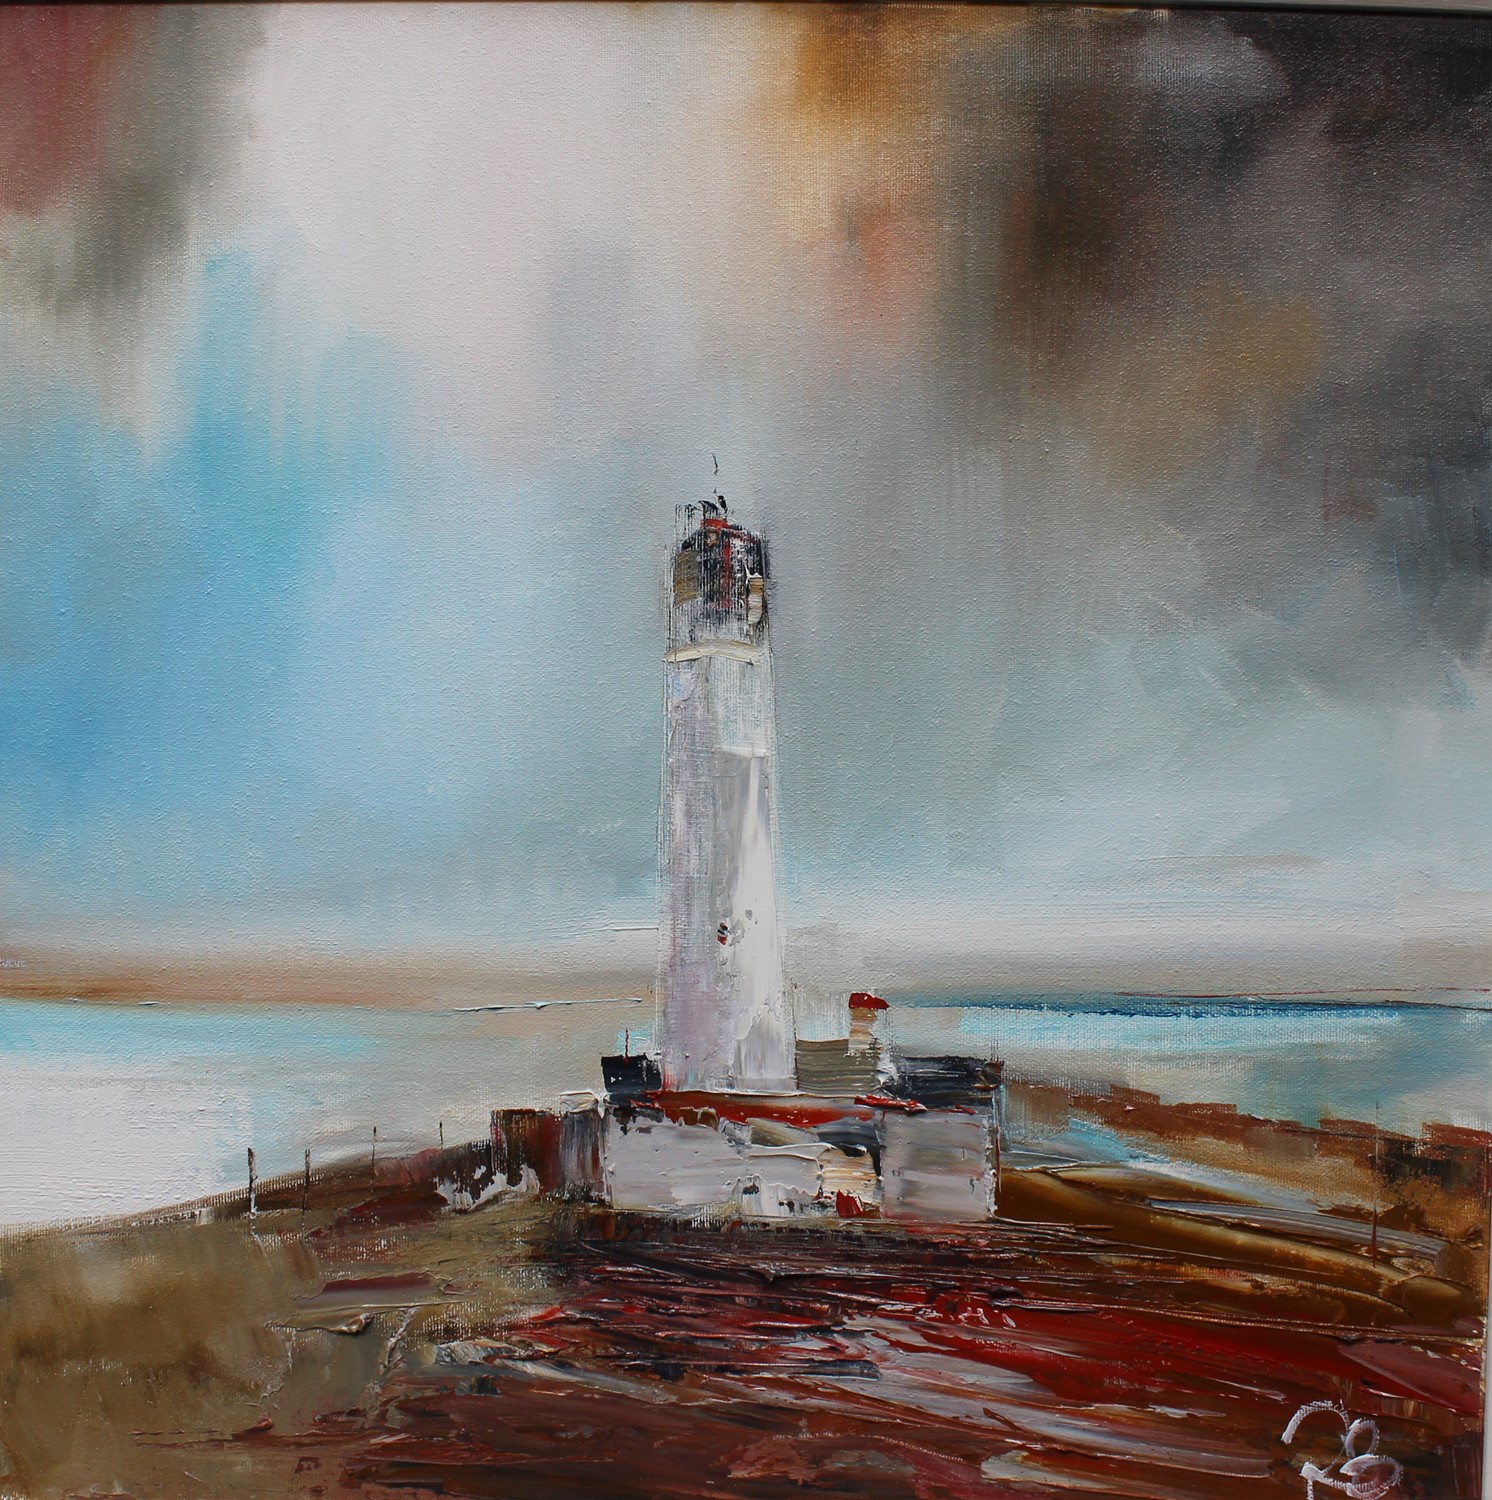 'Lighthouse amid a storm' by artist Rosanne Barr